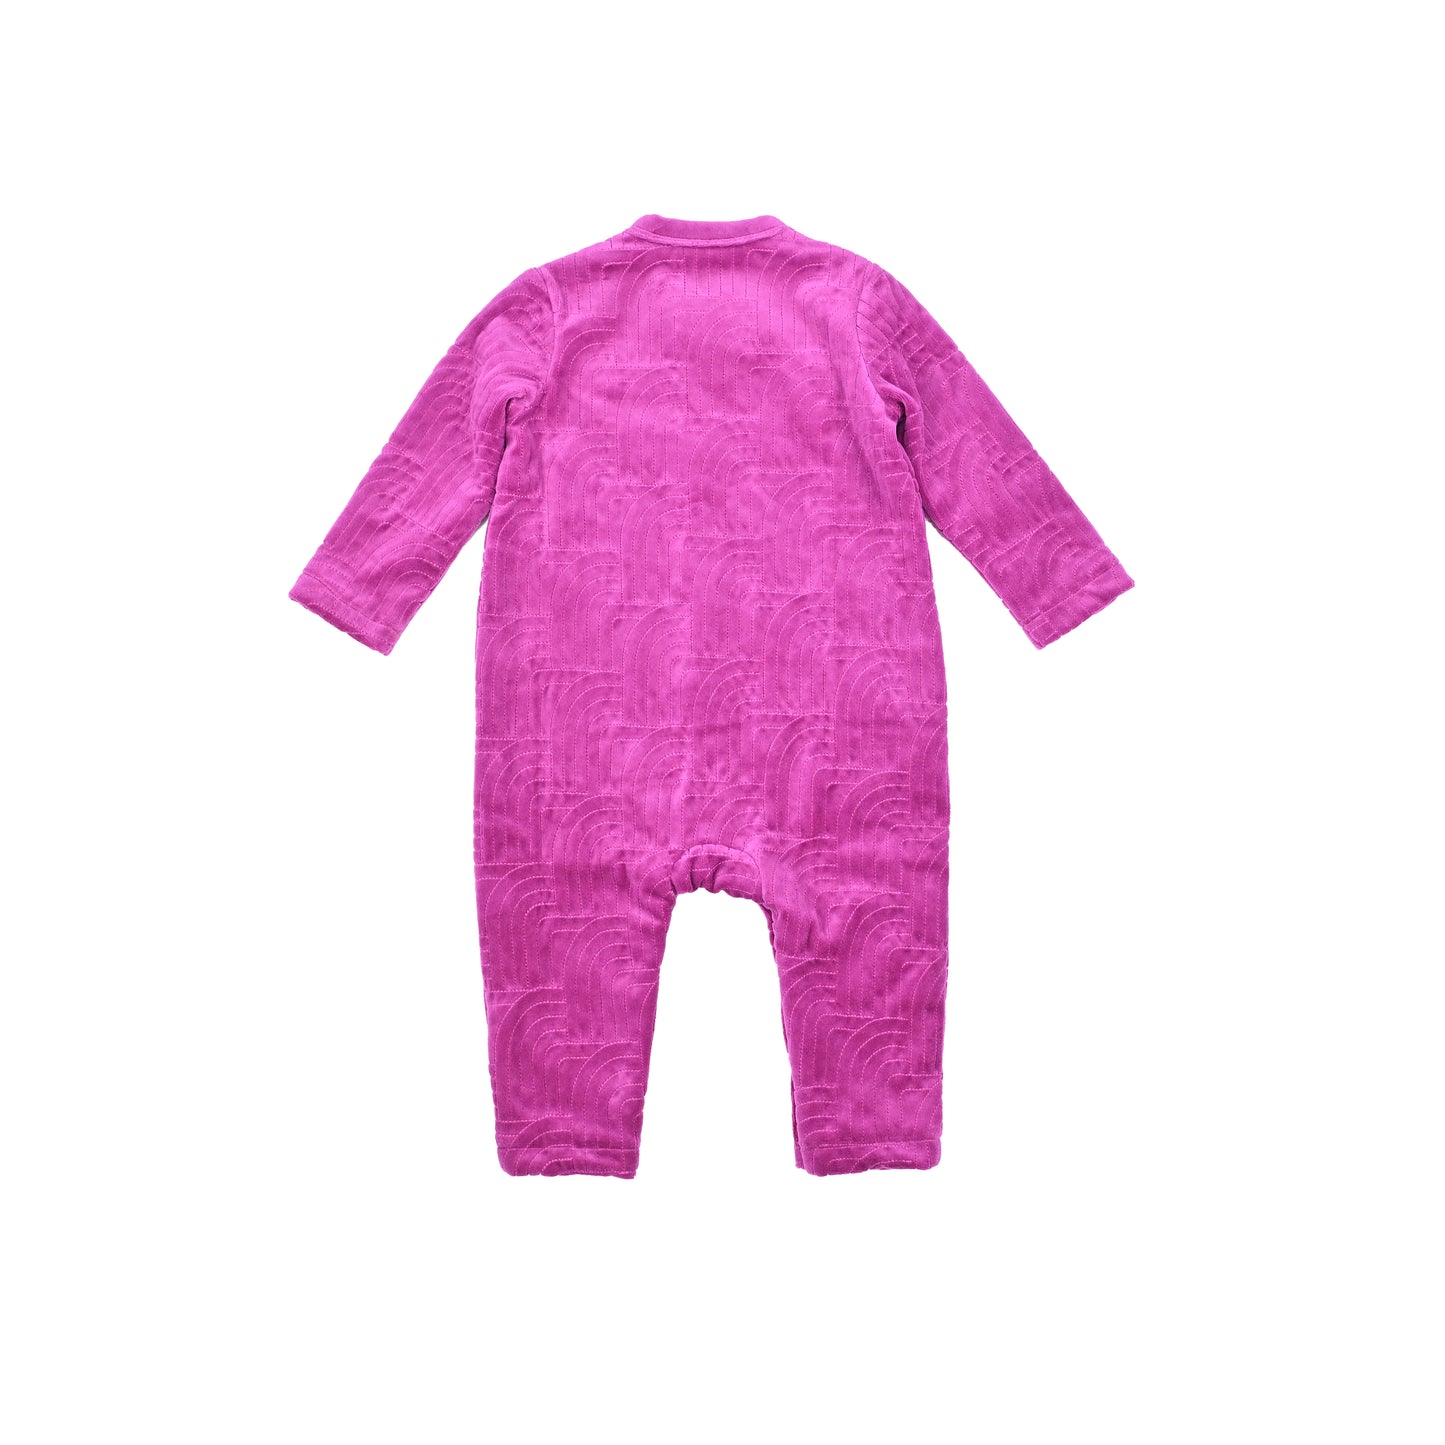 嬰兒衣服 - 絲絨彩虹刺繡側扣連身衣